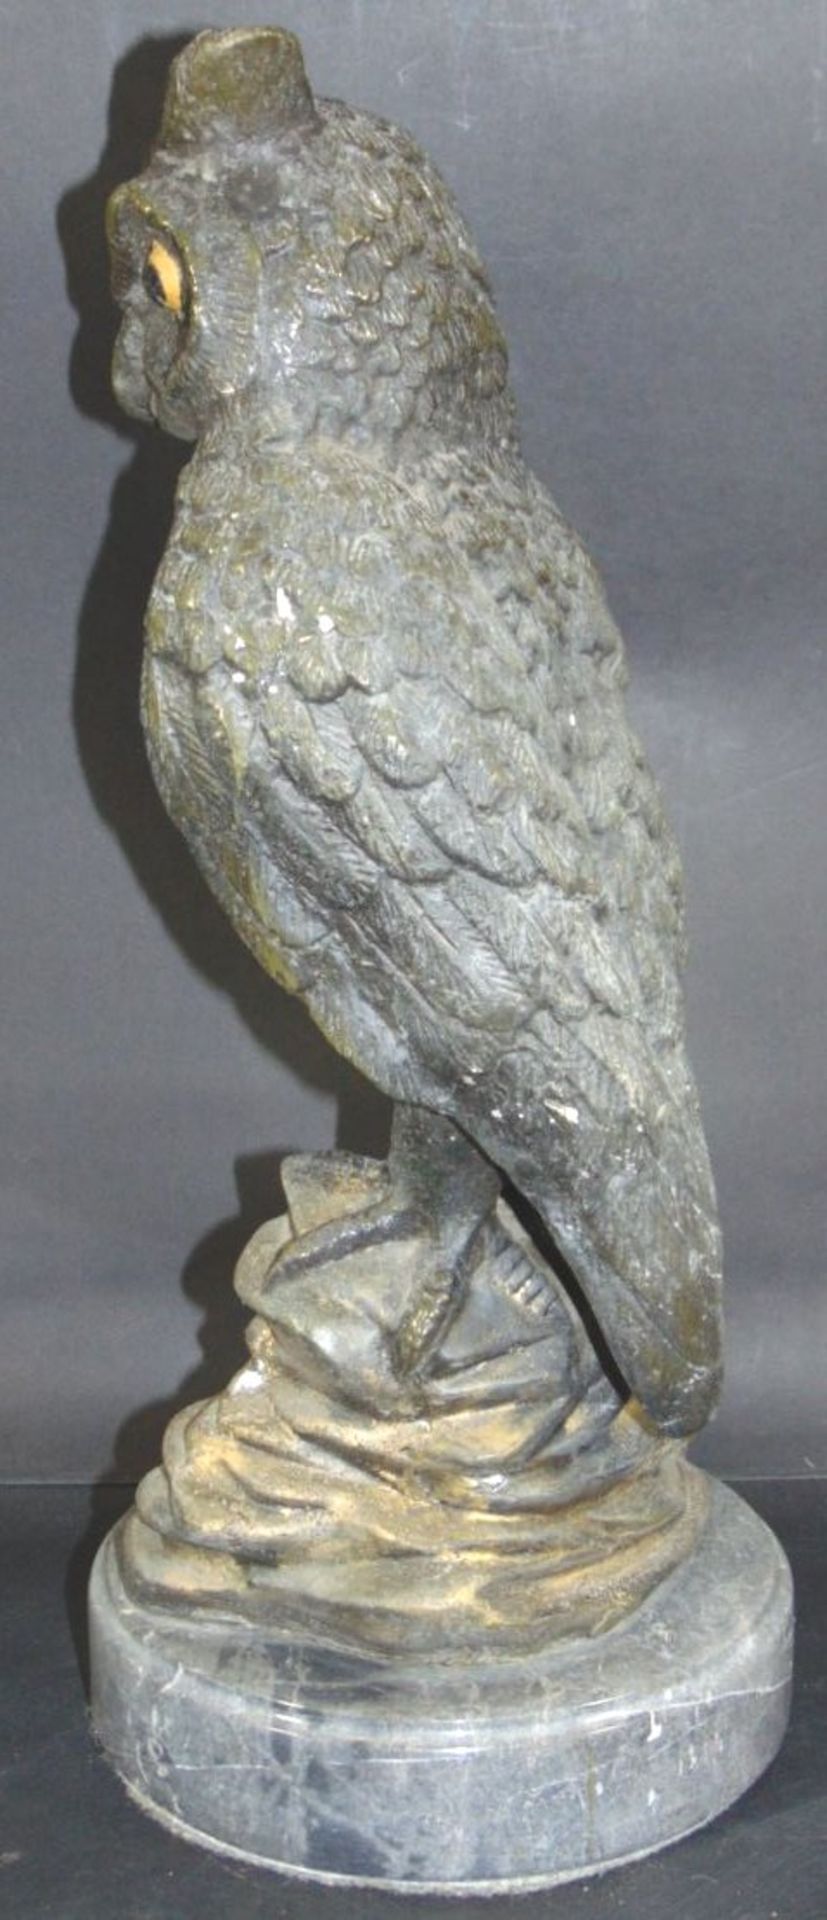 grosse Bronze-Eule auf Marmorsockel, H-42 cm, 9 kg- - -22.61 % buyer's premium on the hammer - Bild 2 aus 5